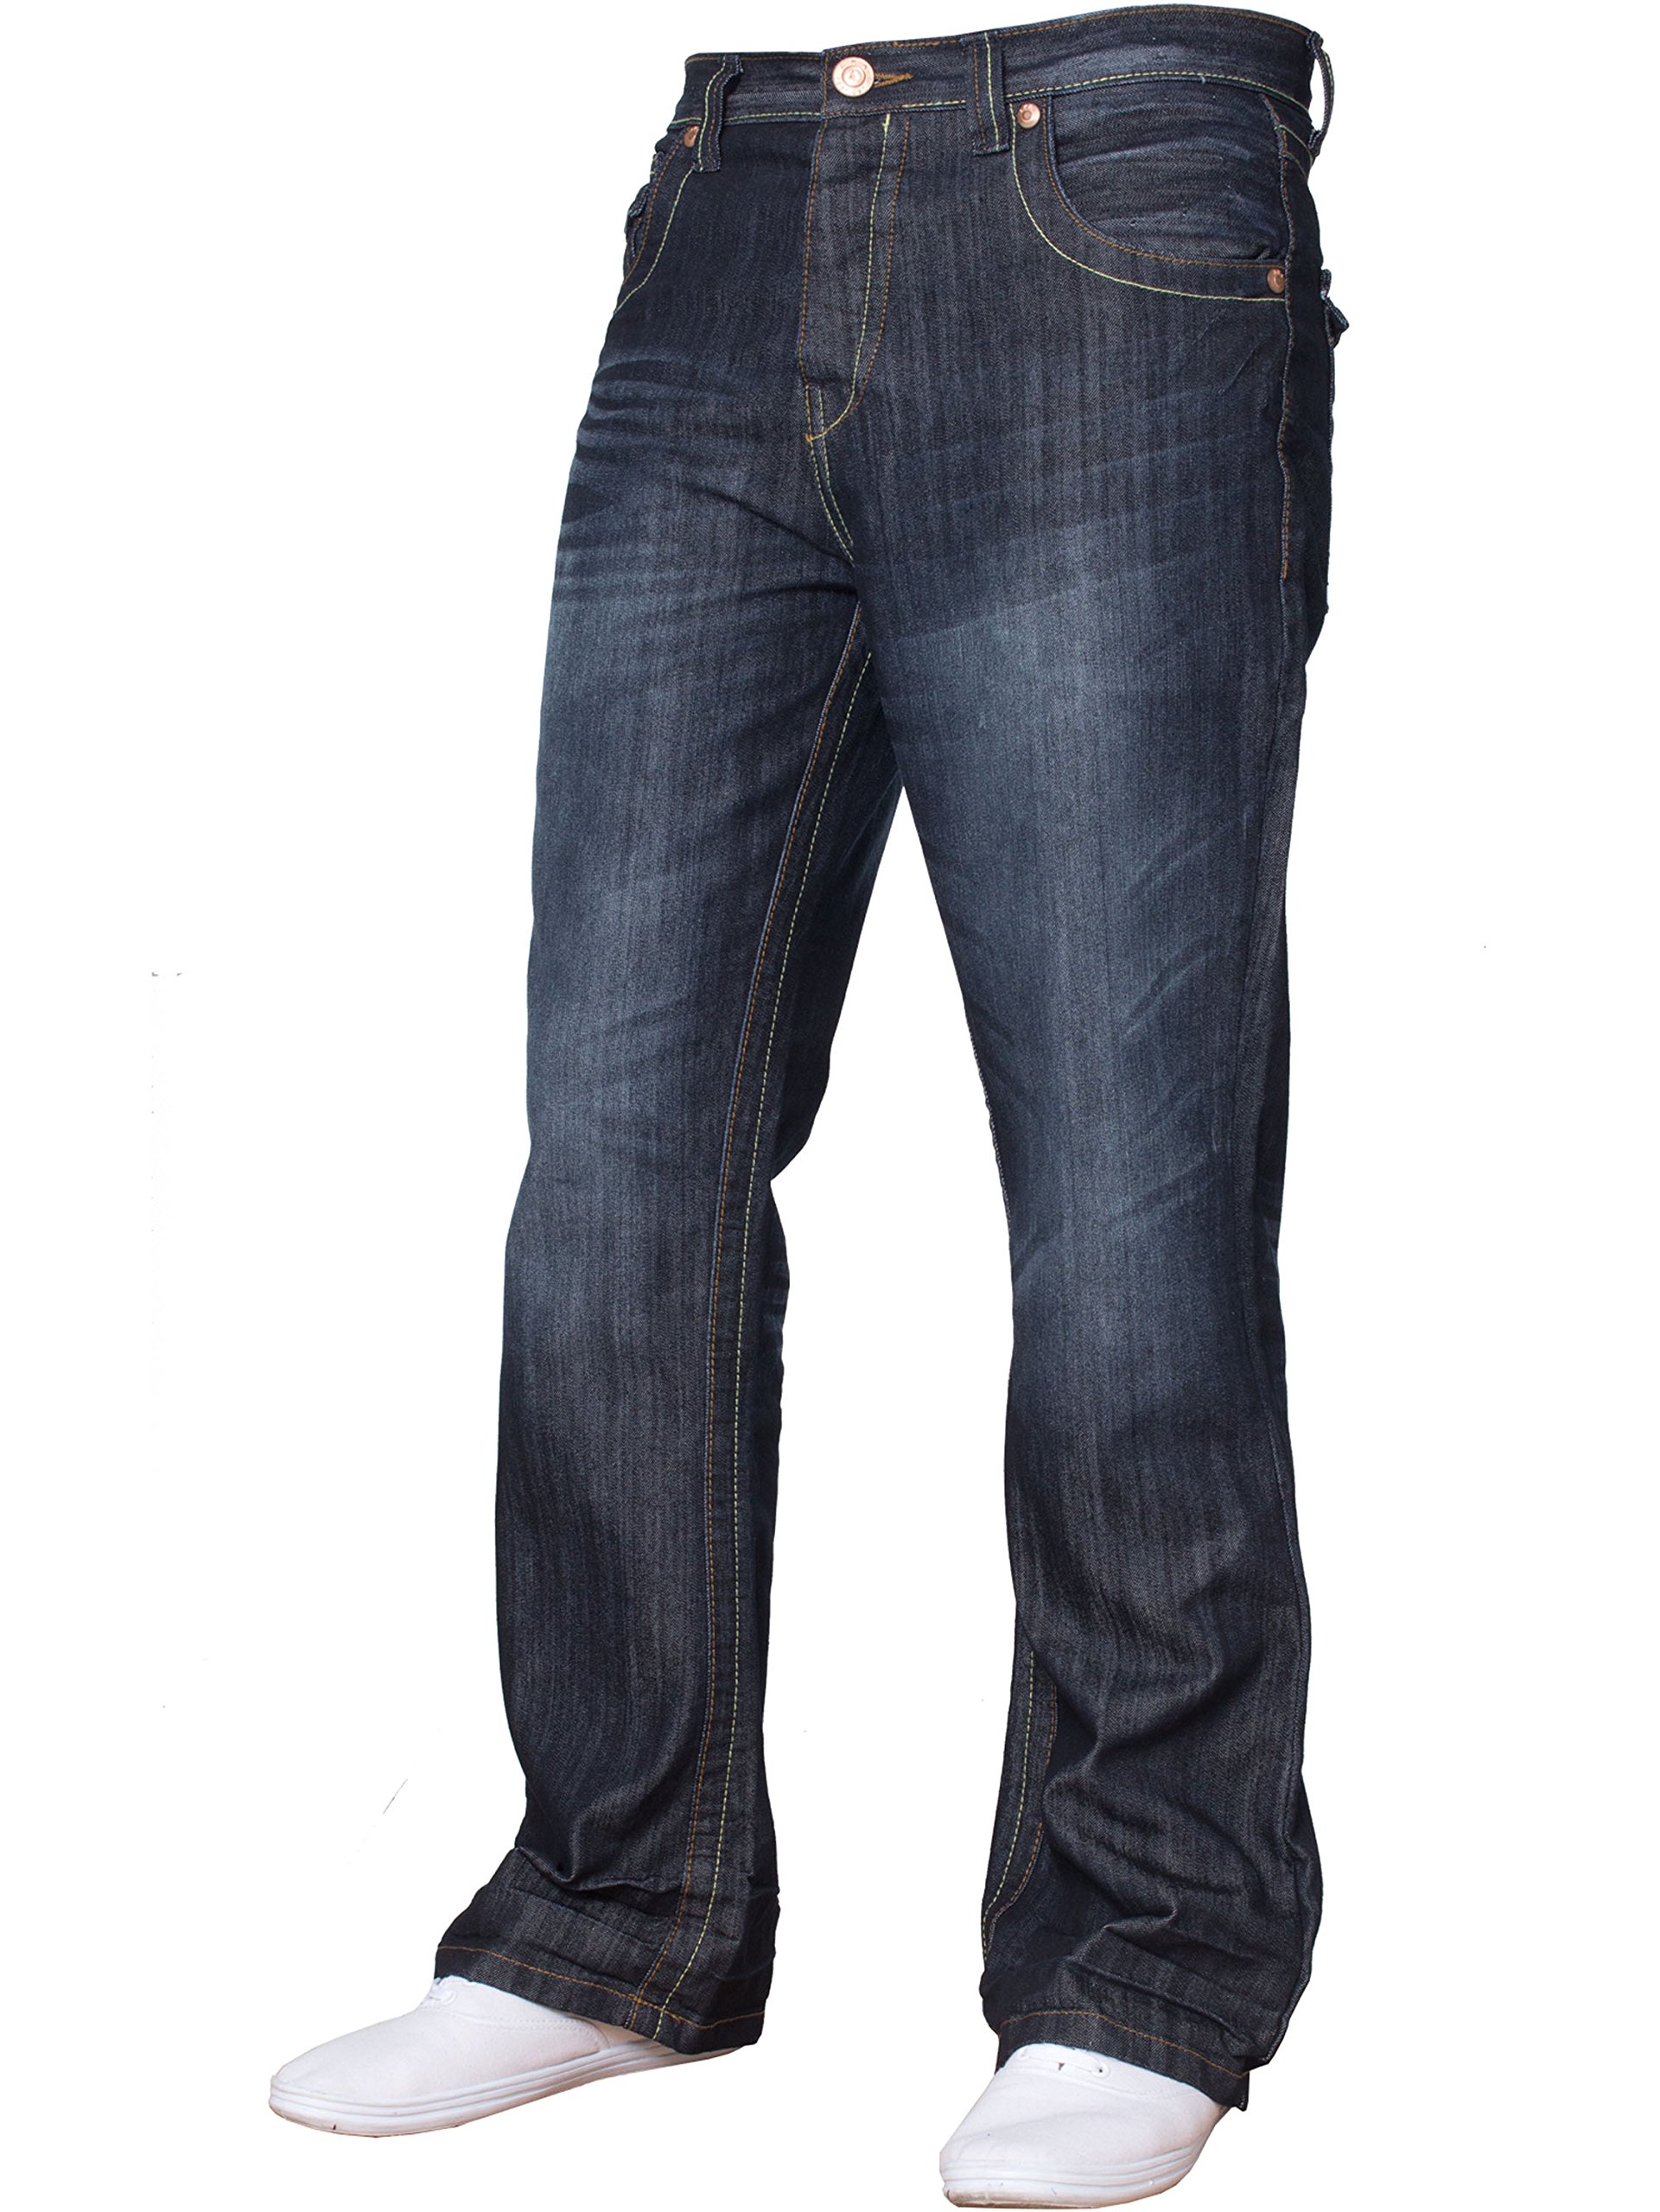 BNWT Herren-Jeans, Bootcut, ausgestellt, große King Size, weites Bein, Blau, Denim Gr. 32 W/34 L, Dunkel gewaschen A31